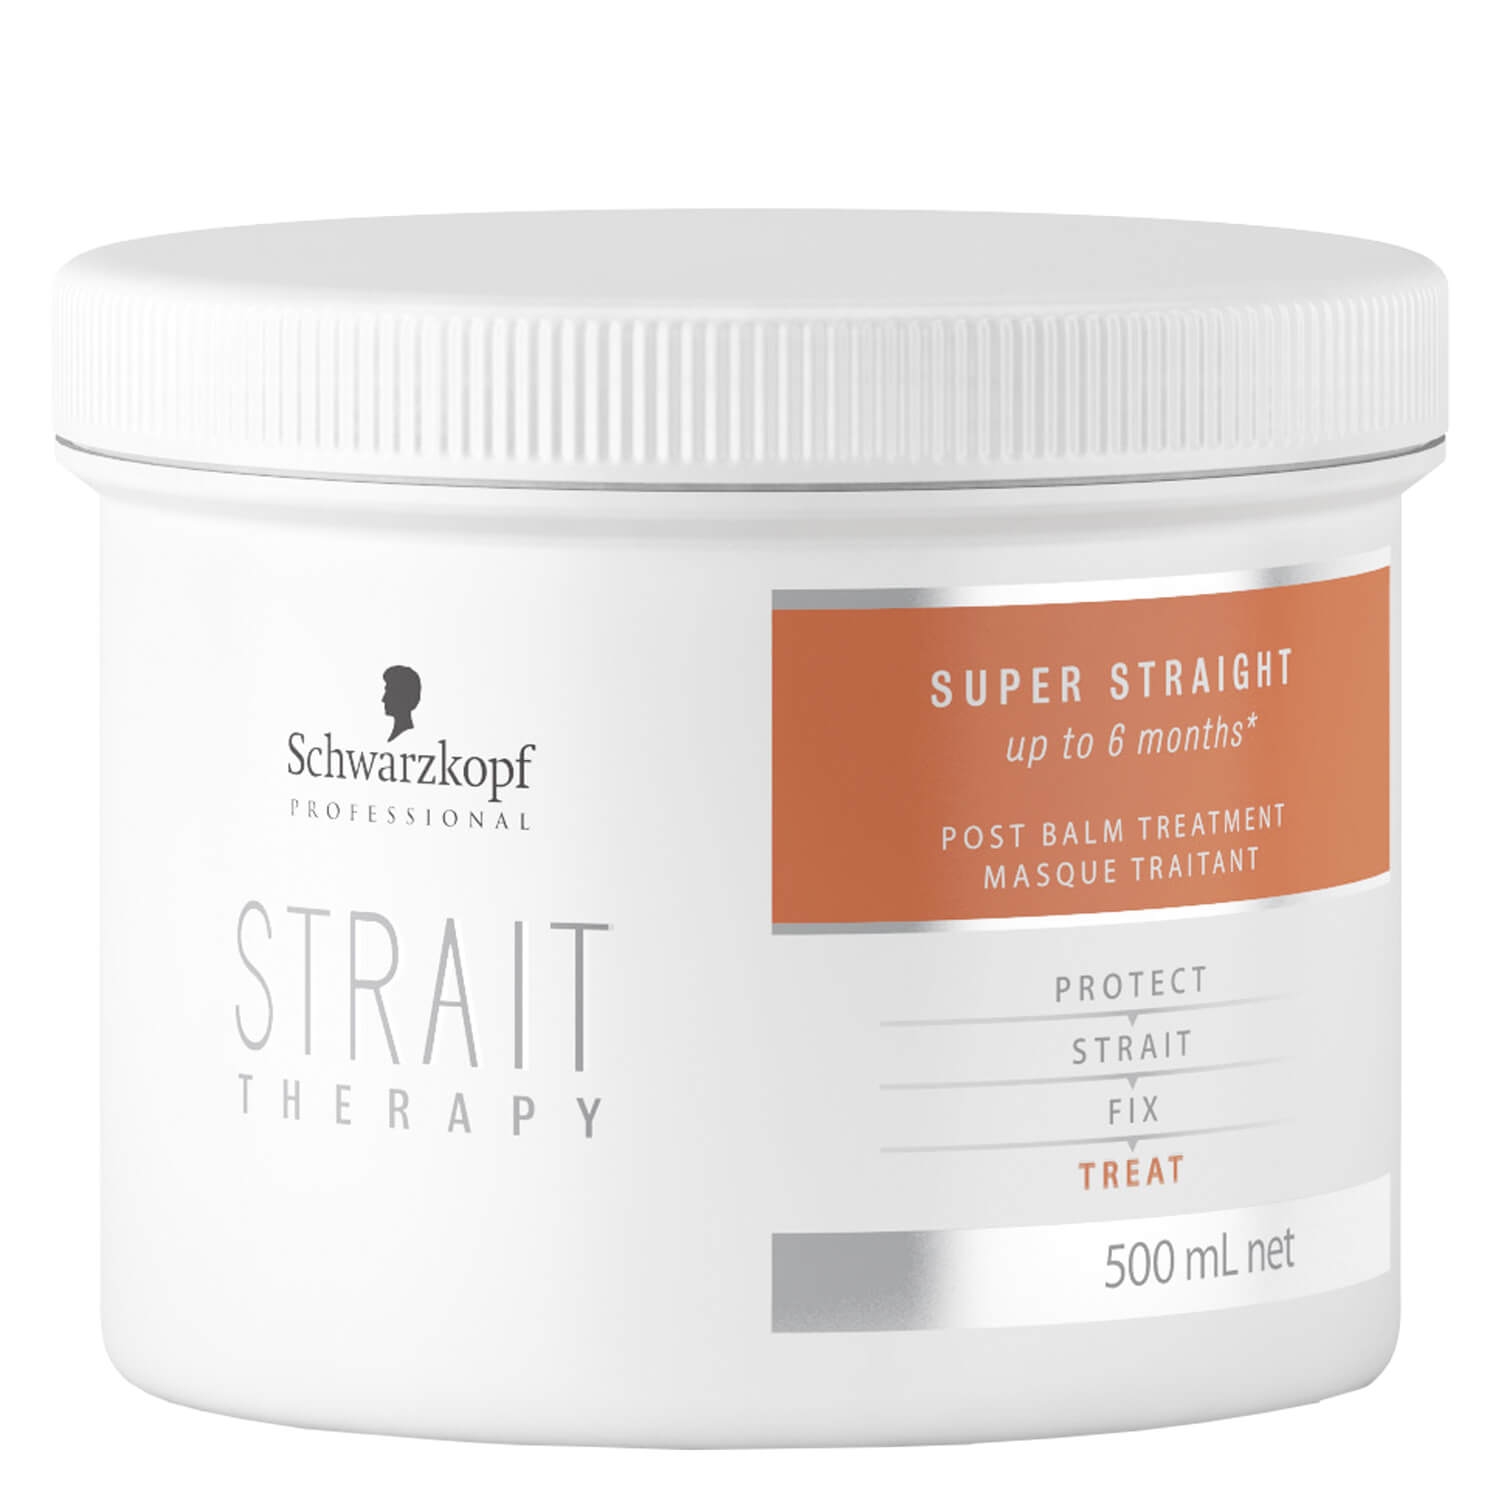 Produktbild von Strait Therapy - Post Balm Treatment